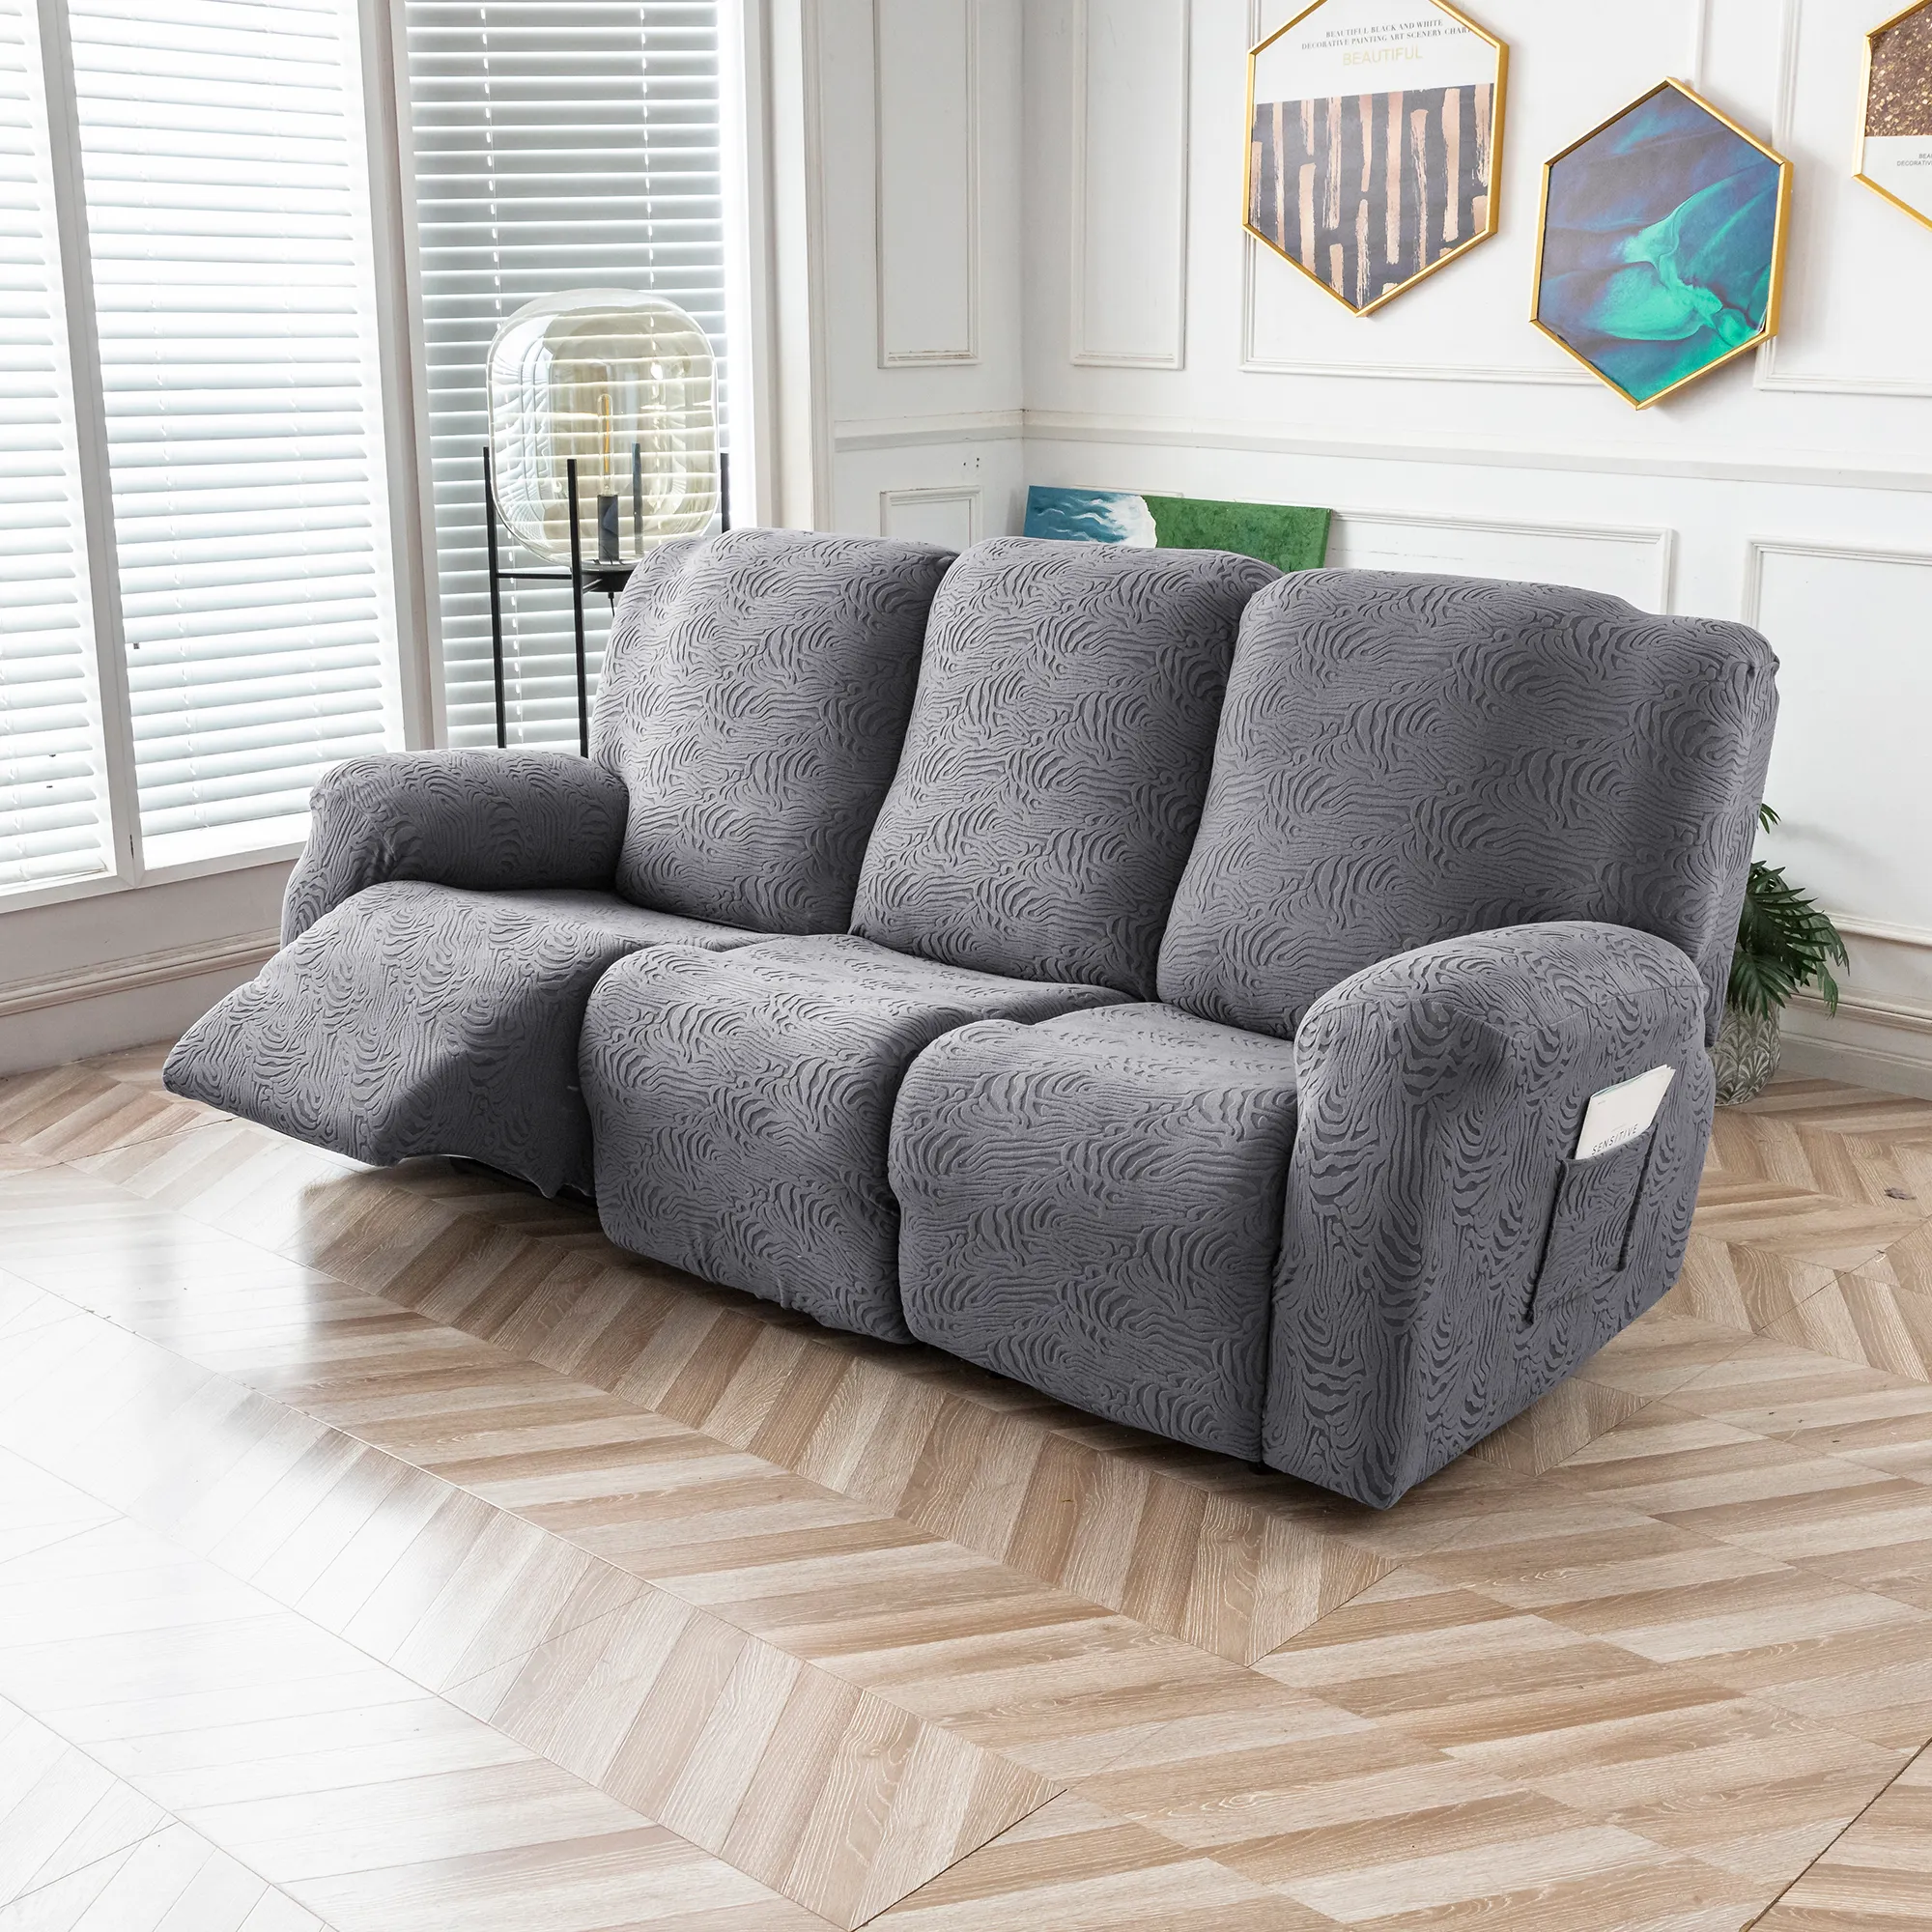 Para sofá reclinable de Color sólido de 3 plazas, funda de sofá, Protector de sofá todo incluido con bolsillo